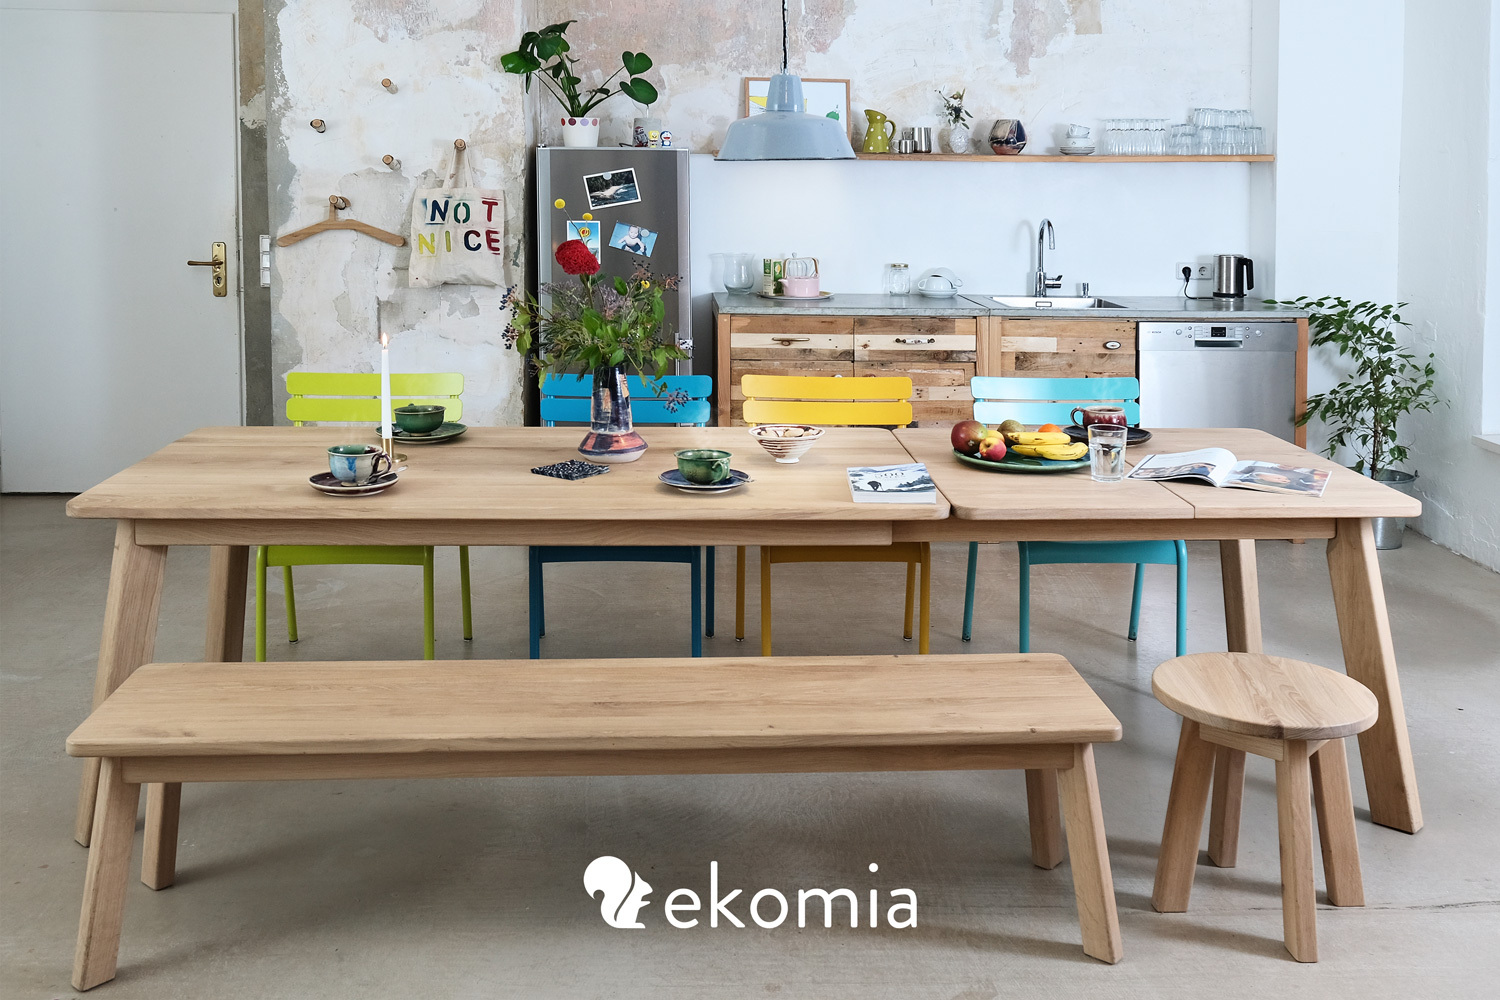 Mit dem ekomia-Konfigurator könnt ihr euren Esstisch aus Massivholz selbst zusammenstellen. Foto: ekomia